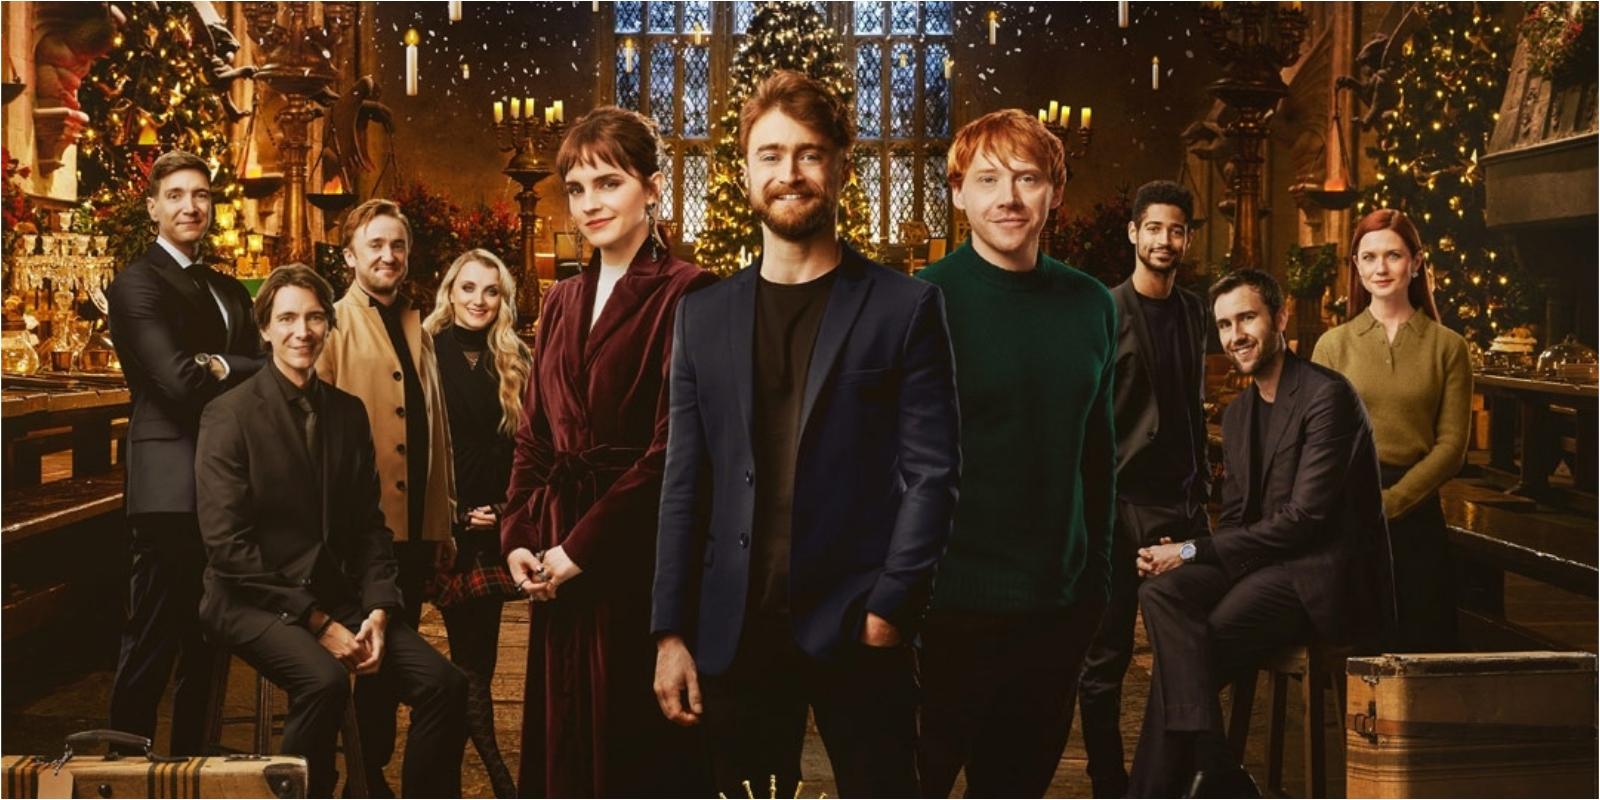 Peringatan 20 tahun spesial ‘Harry Potter’ akan hadir di HBO Go Tahun Baru ini — inilah semua yang perlu Anda ketahui GMA News Online